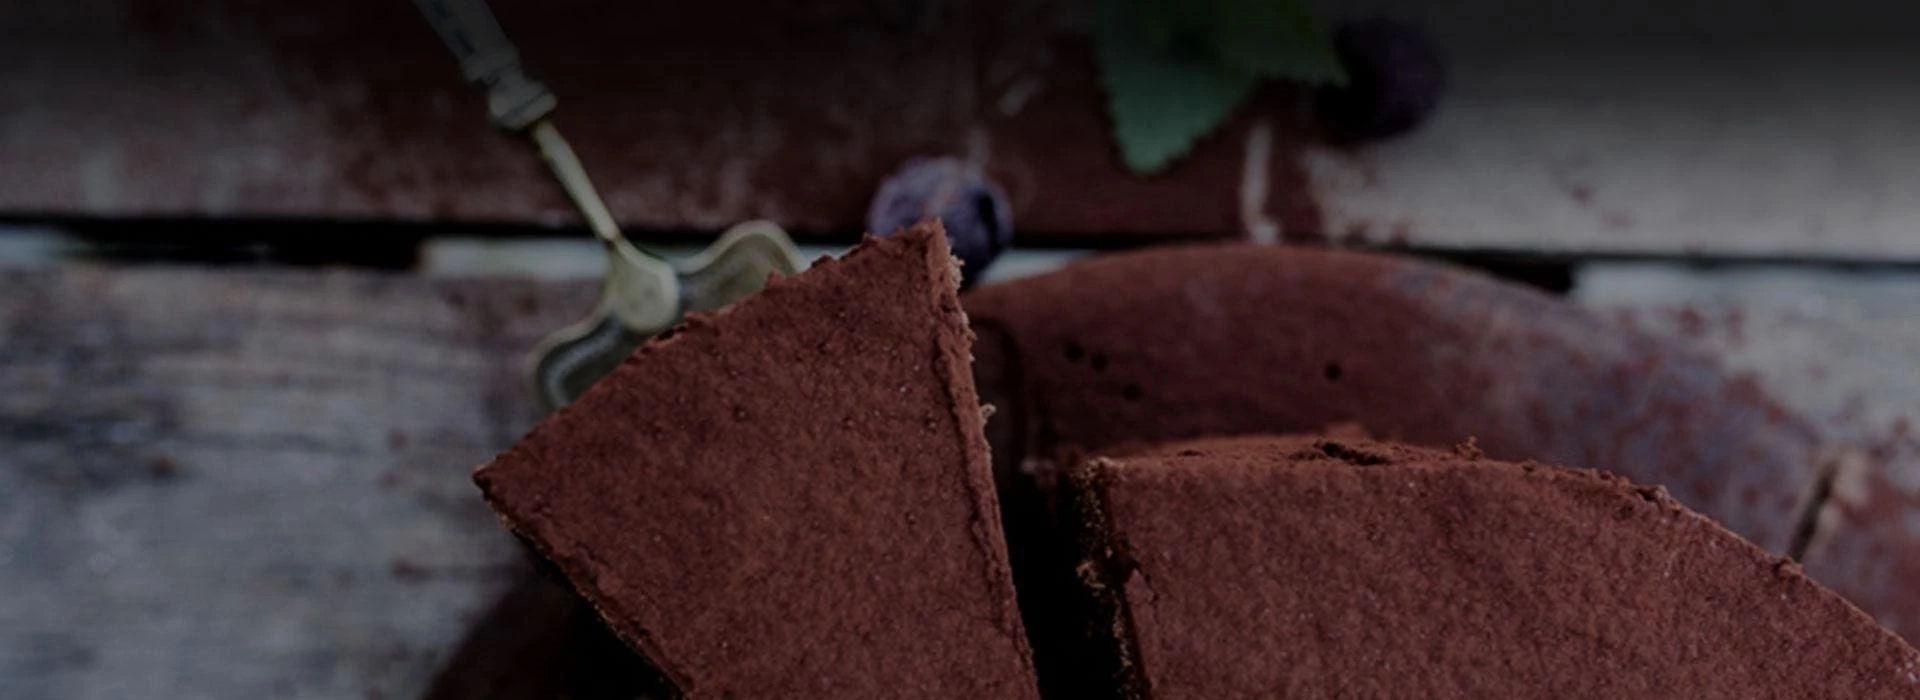 ciasto czekoladowe, kawałek